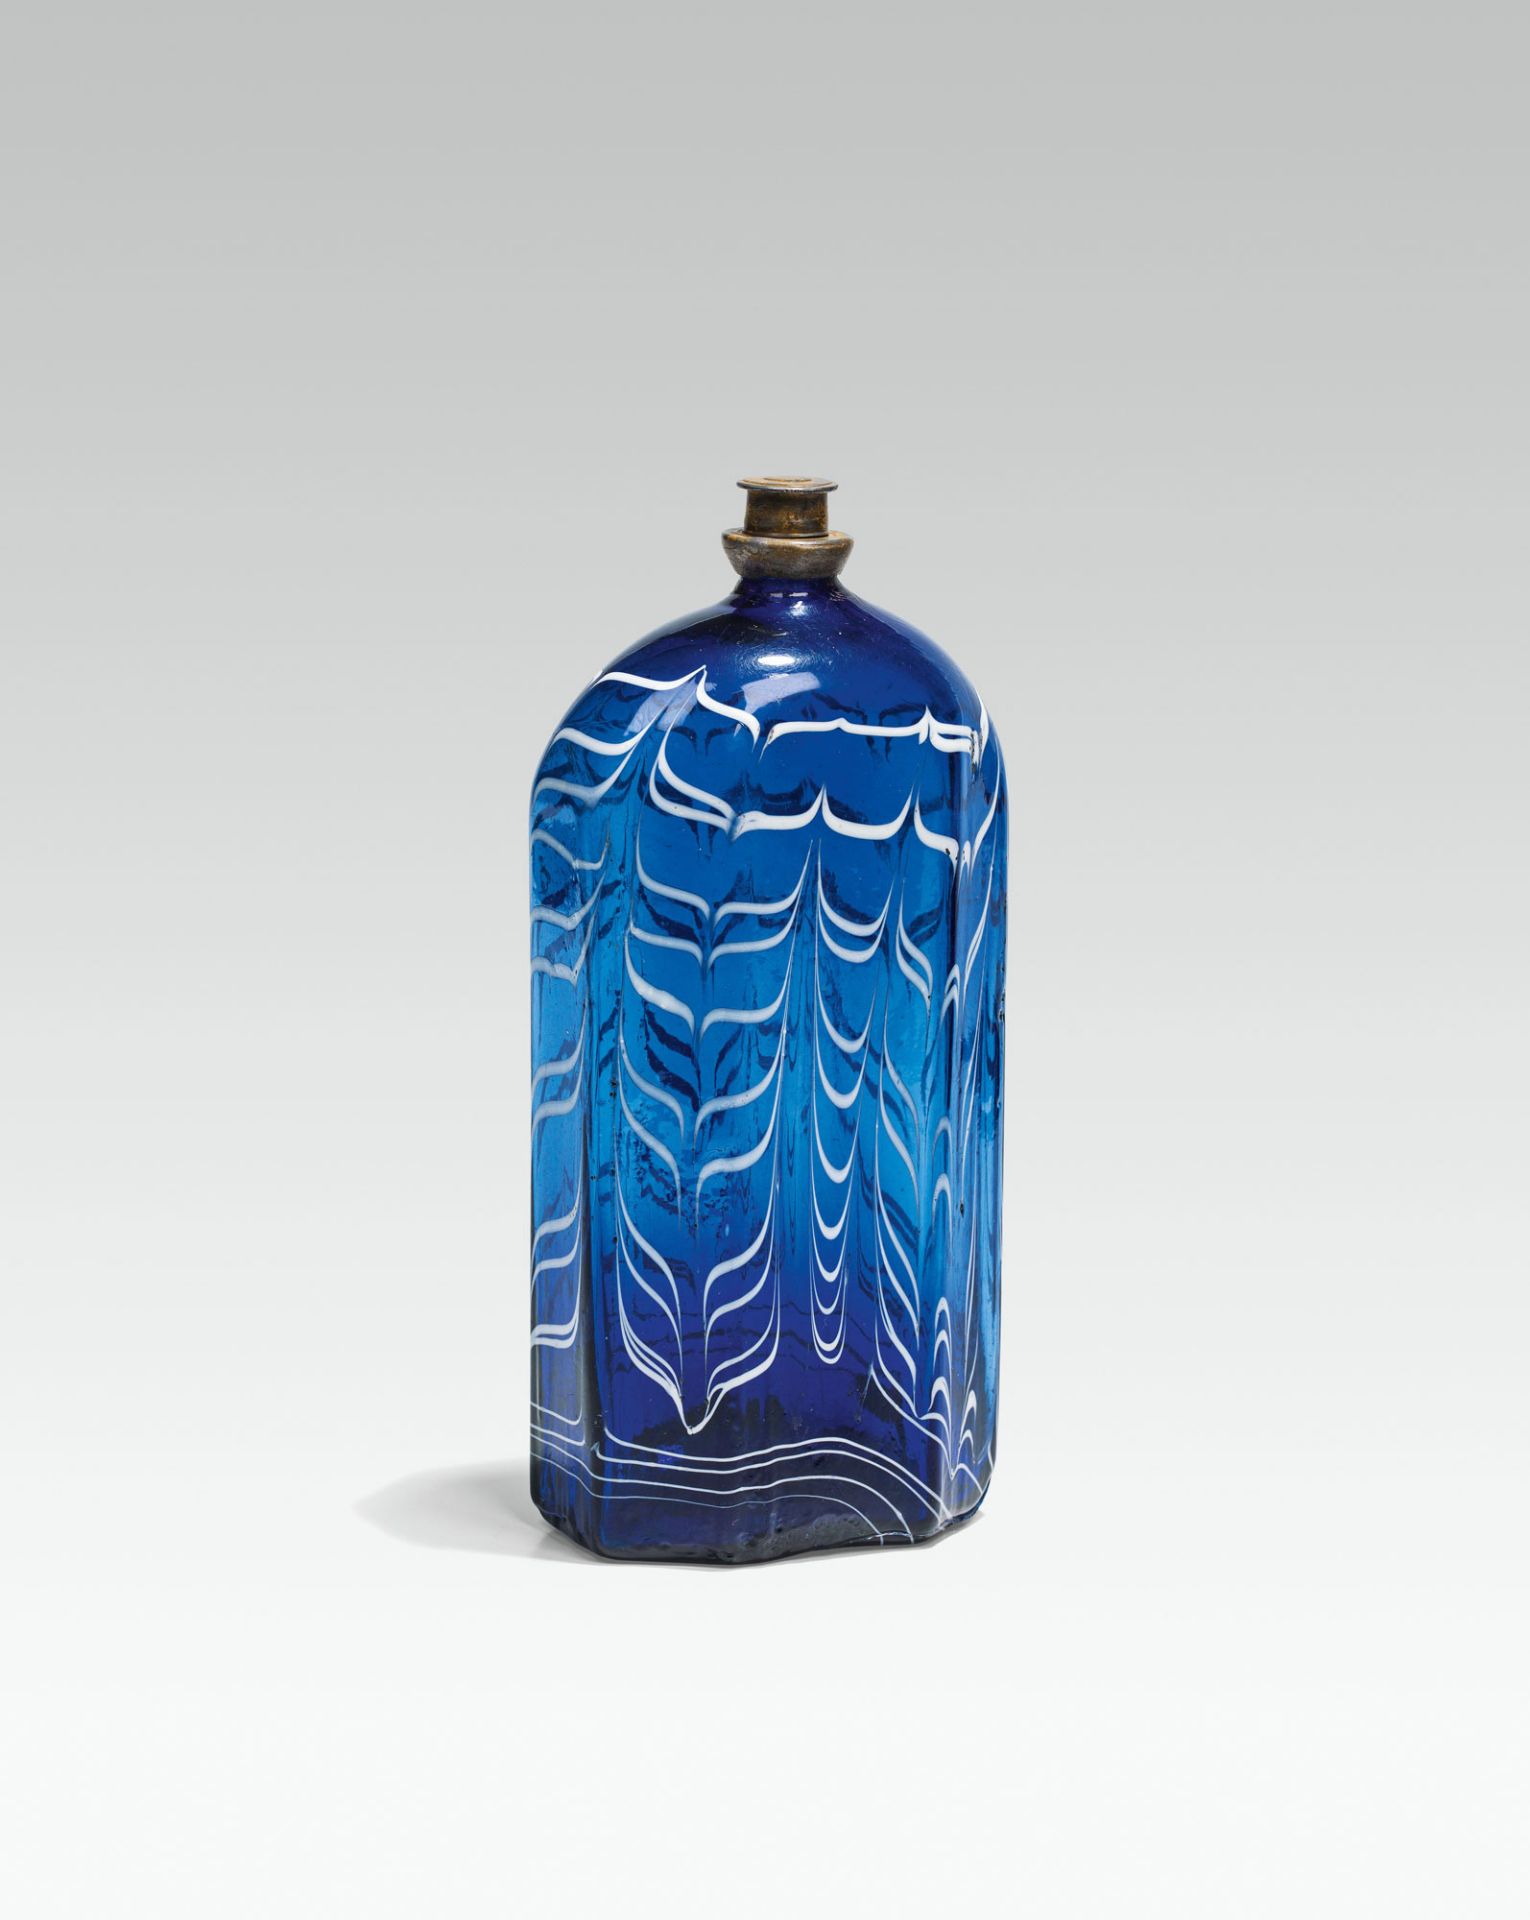 Combed bottleblue glass, combed white; pontil mark at the base; octogonal shape, rounded shoulder;